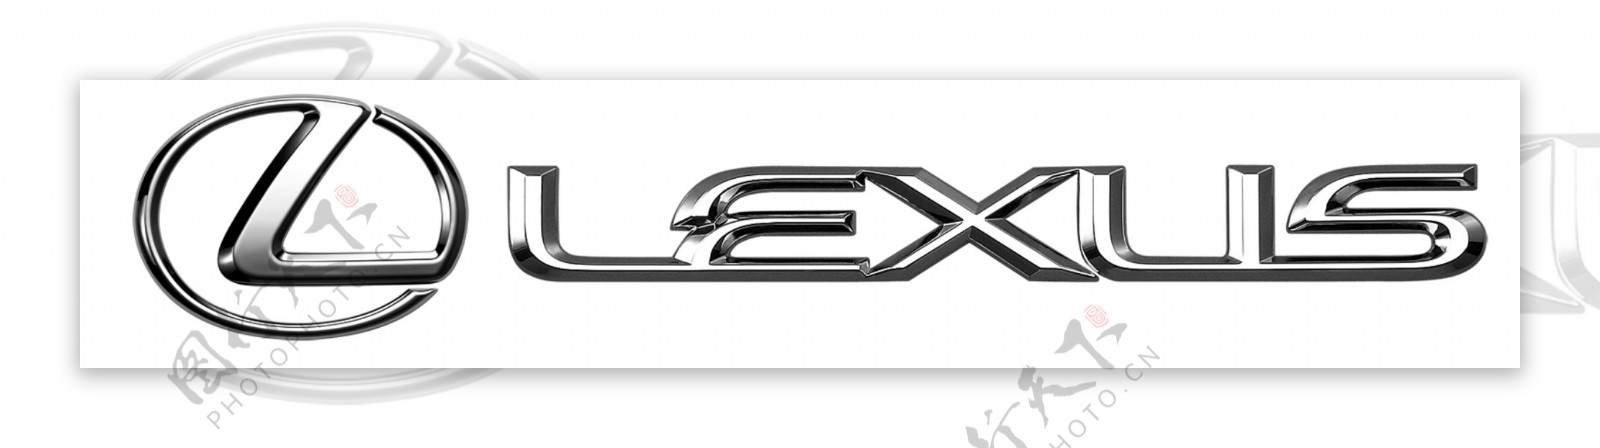 雷克萨斯金属logo